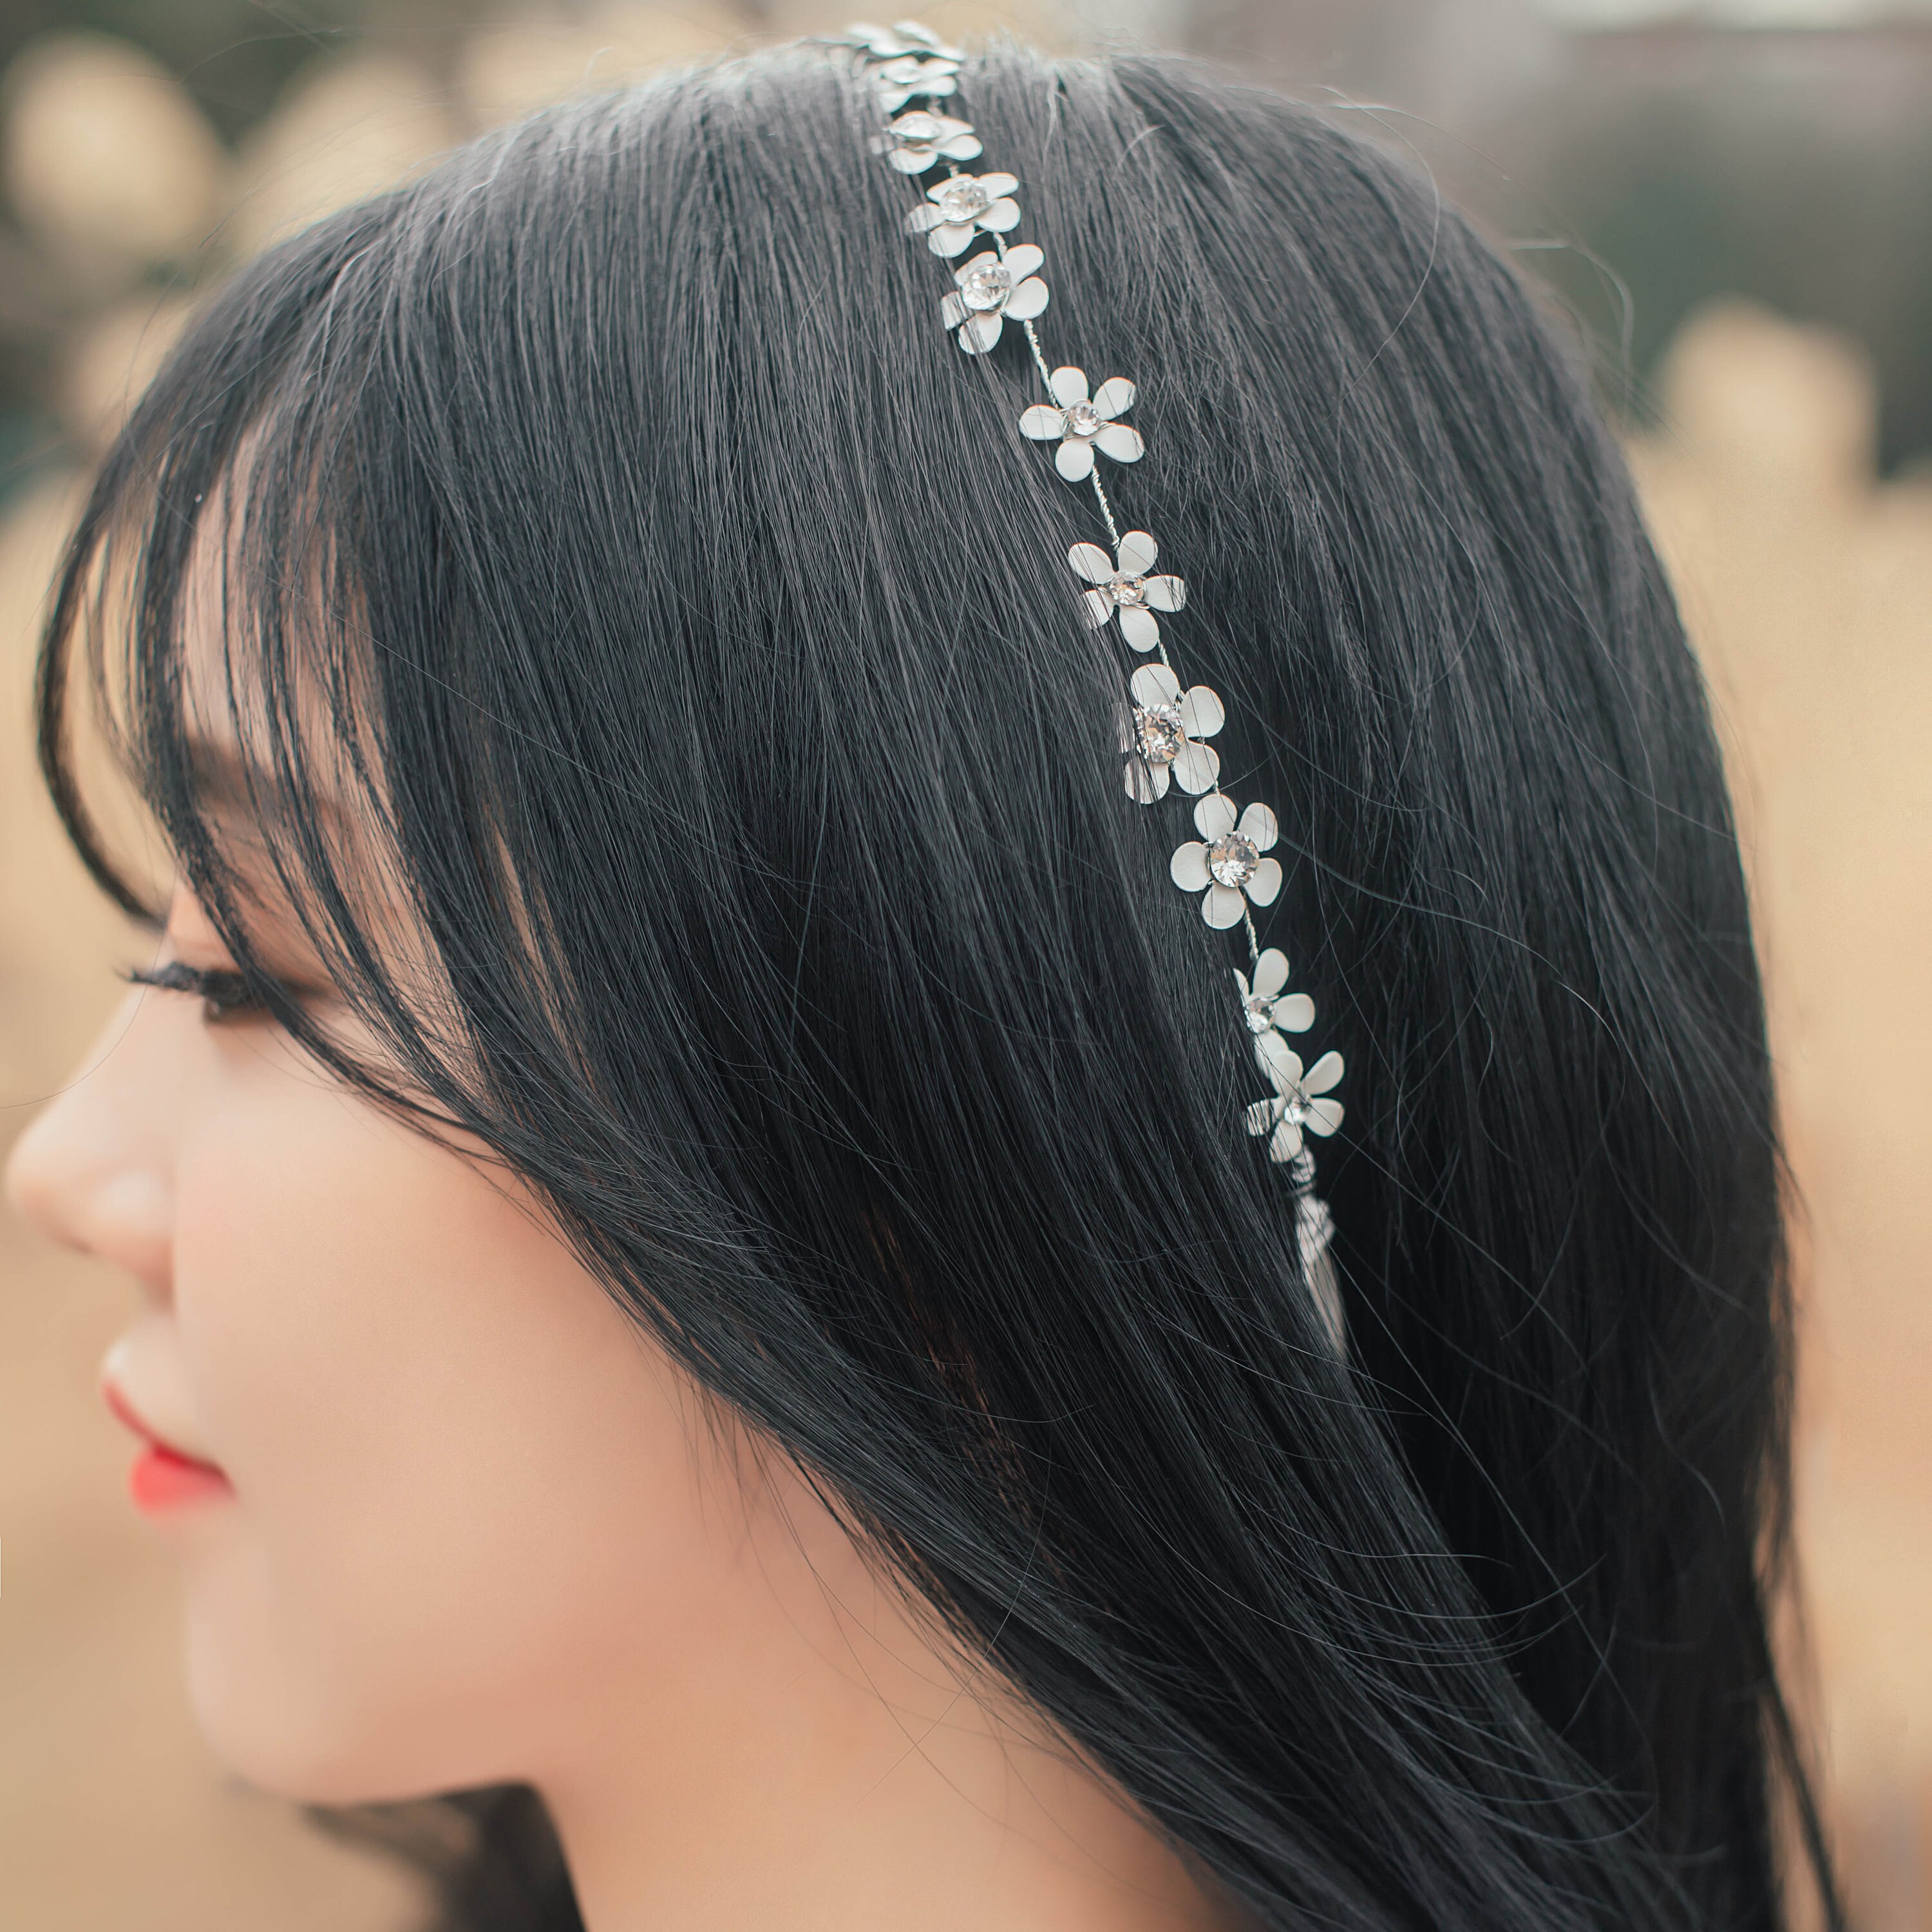 Hairpin hair clip hair accessories for women pin pearl hair band white  wedding dress accessories pan Hair Headband lady headdress